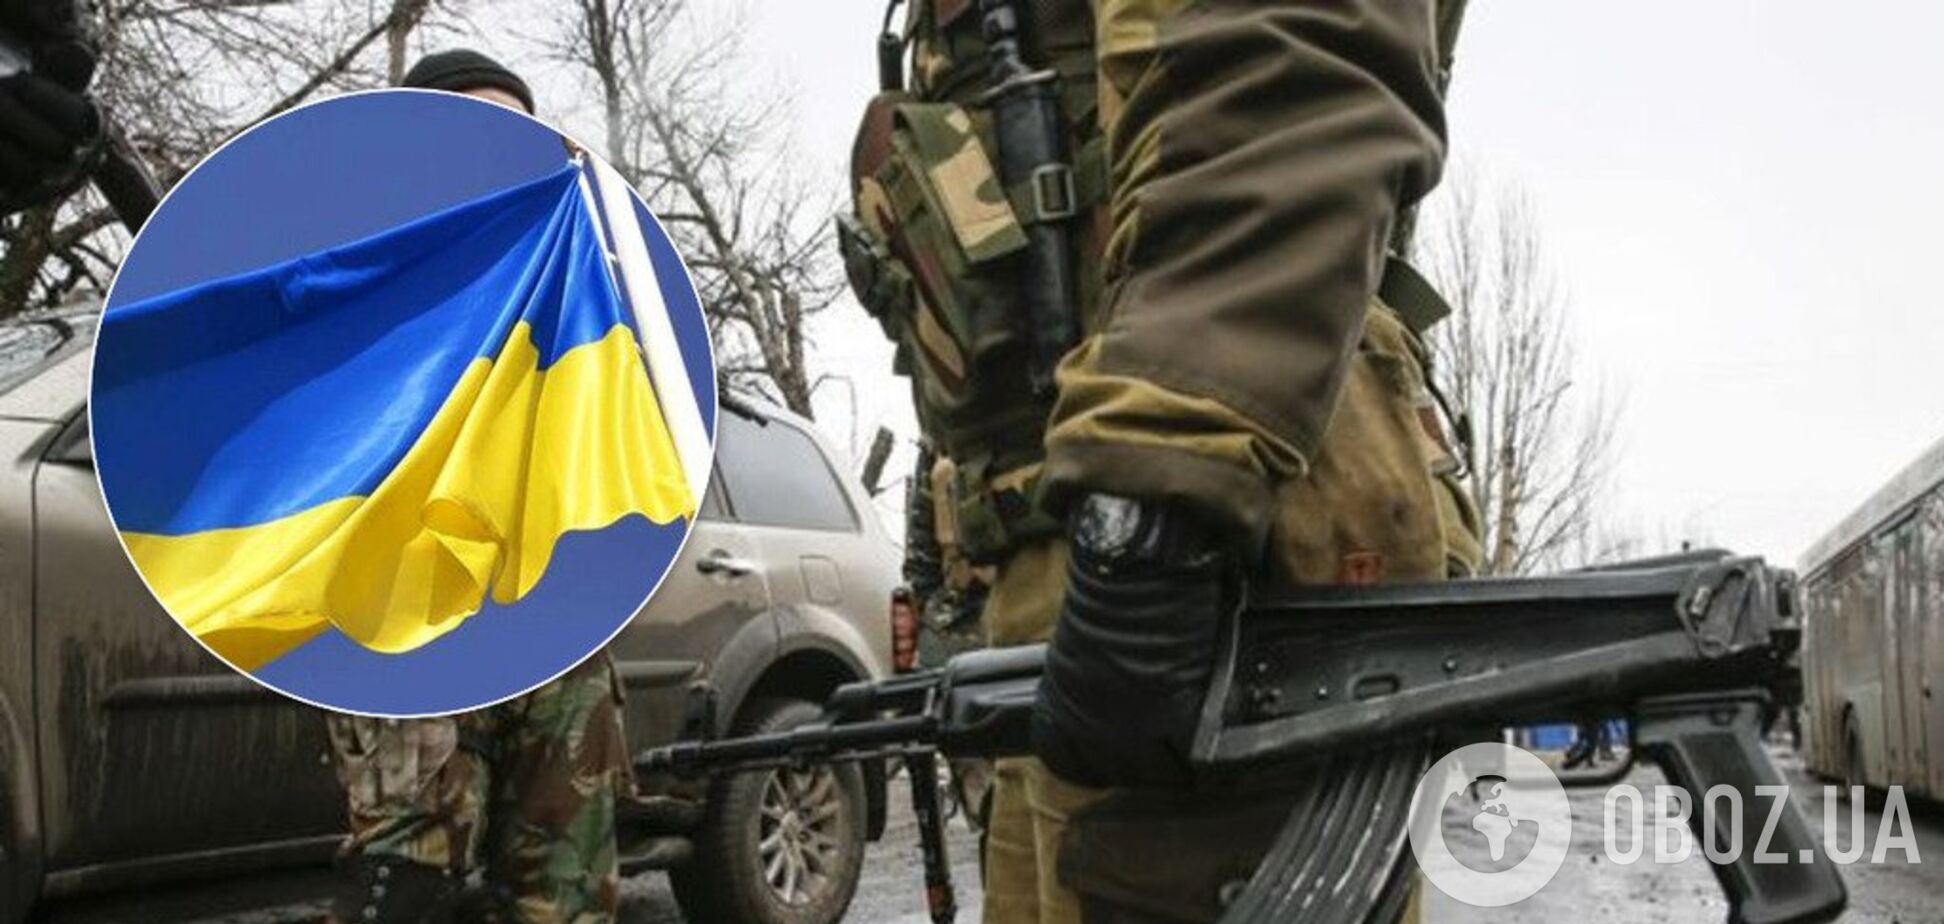 На Донбассе оккупанты поглумились над флагом Украины. Видео